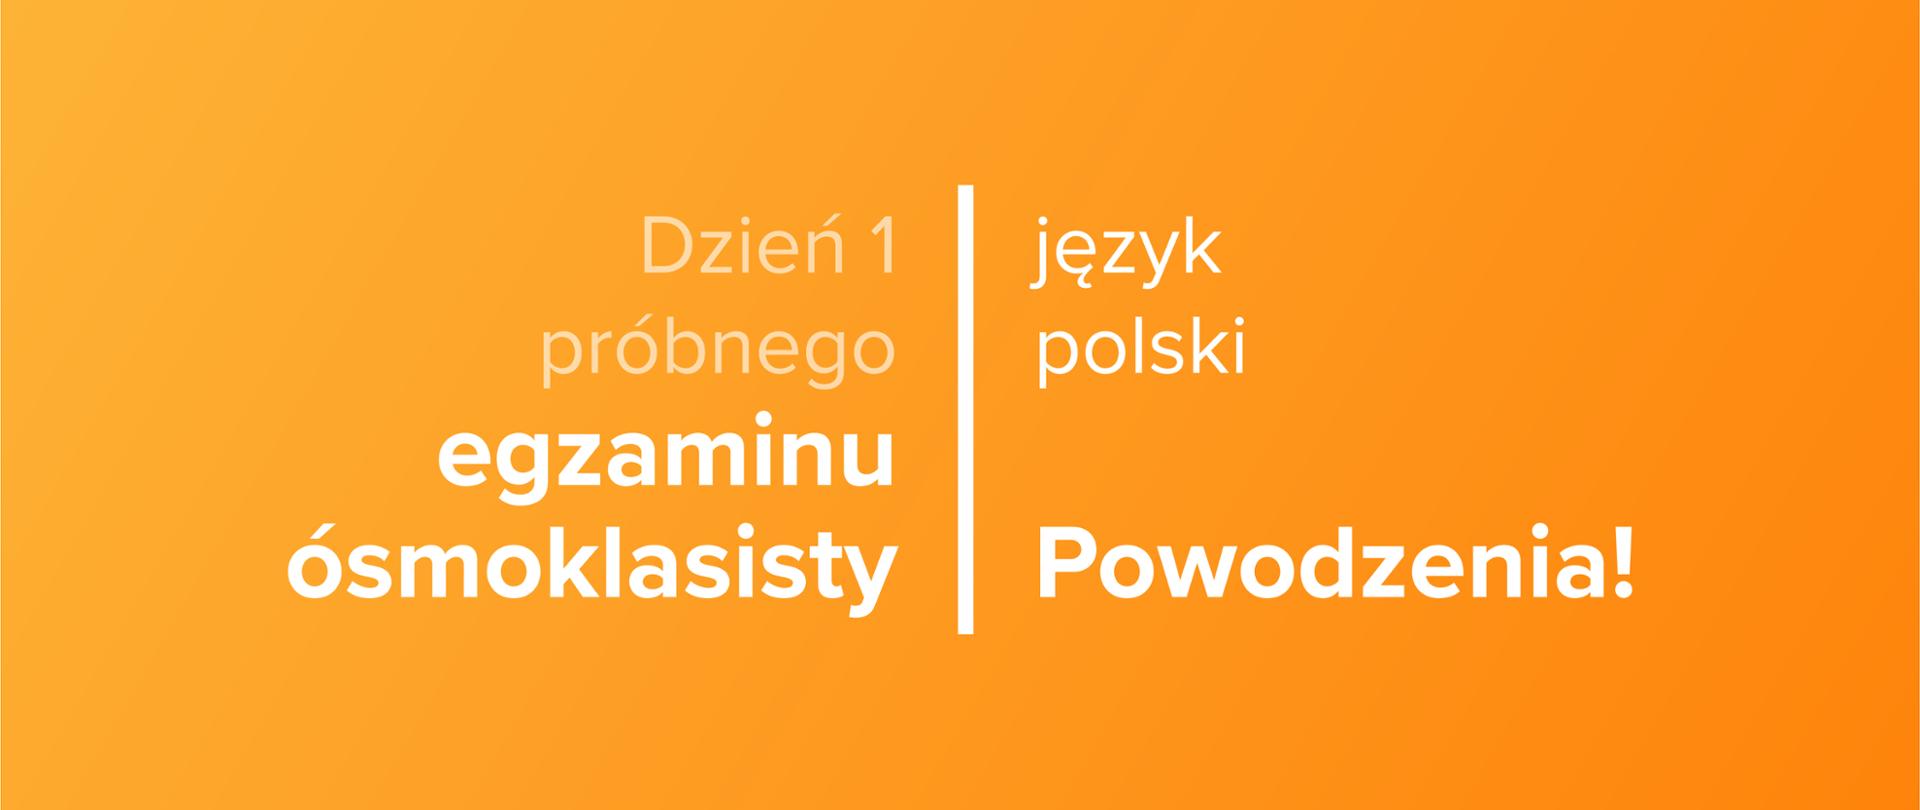 Tekst na pomarańczowym tle: Dzień 1 próbnego egzaminu ósmoklasisty – język polski – powodzenia!